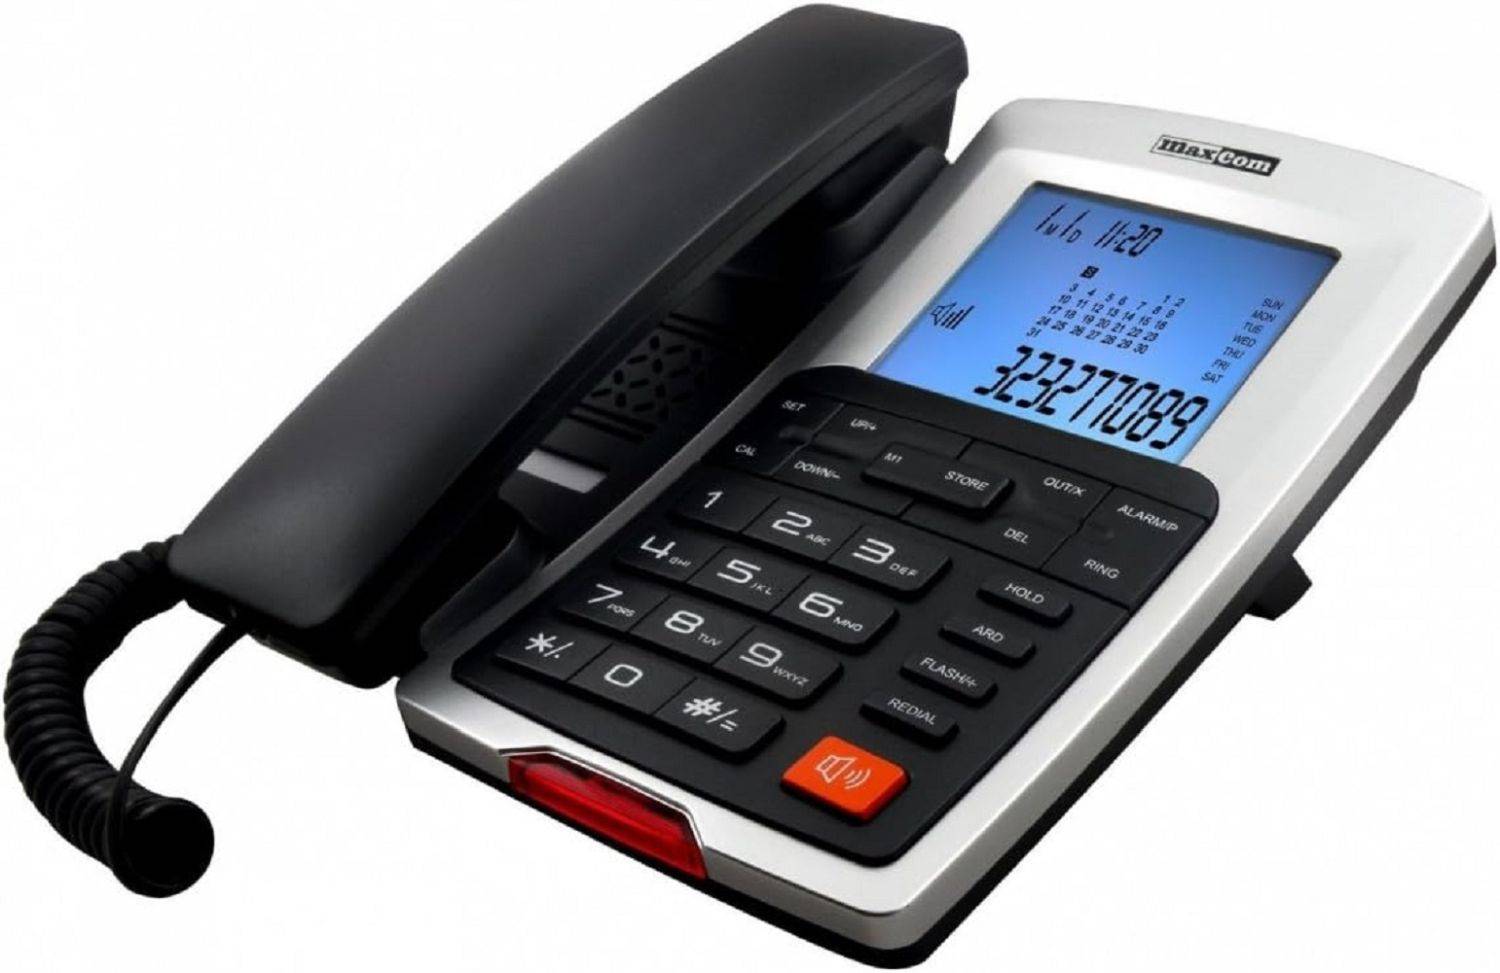 Maxcom KXT709 Telefon Analoges Telefon Anrufer-ID Schwarz, Weiß kaufen